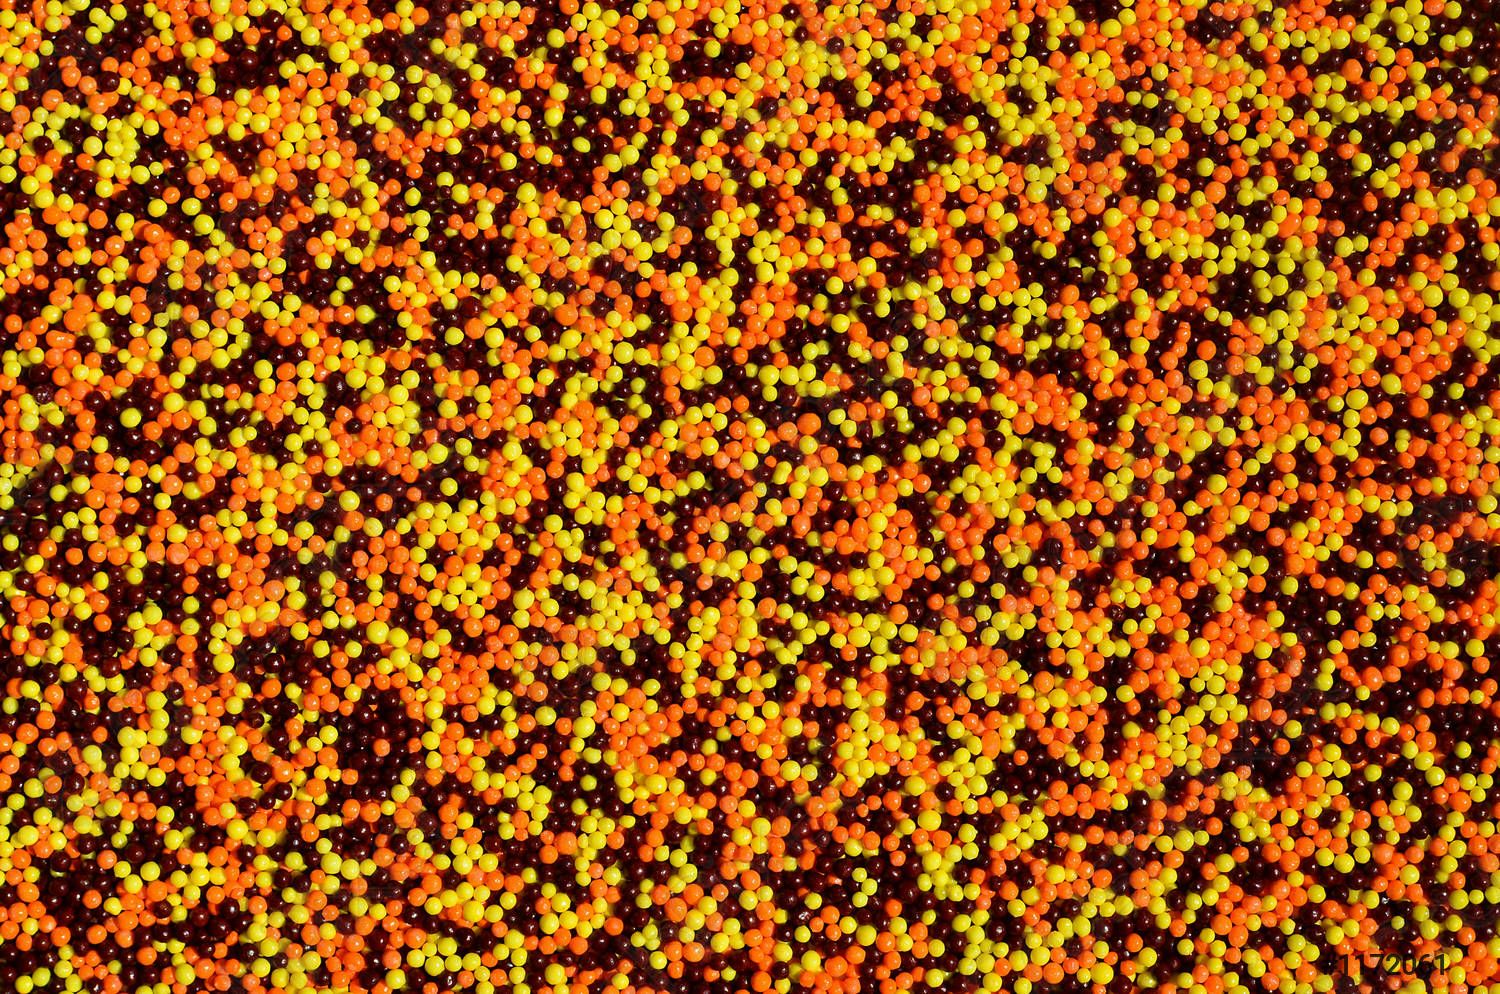  Farbiges Hintergrundbild 1500x994. Hintergrundbild einer Vielzahl farbiger glasierter Pulver in Form kleiner Kugeln vorrätig 1172061